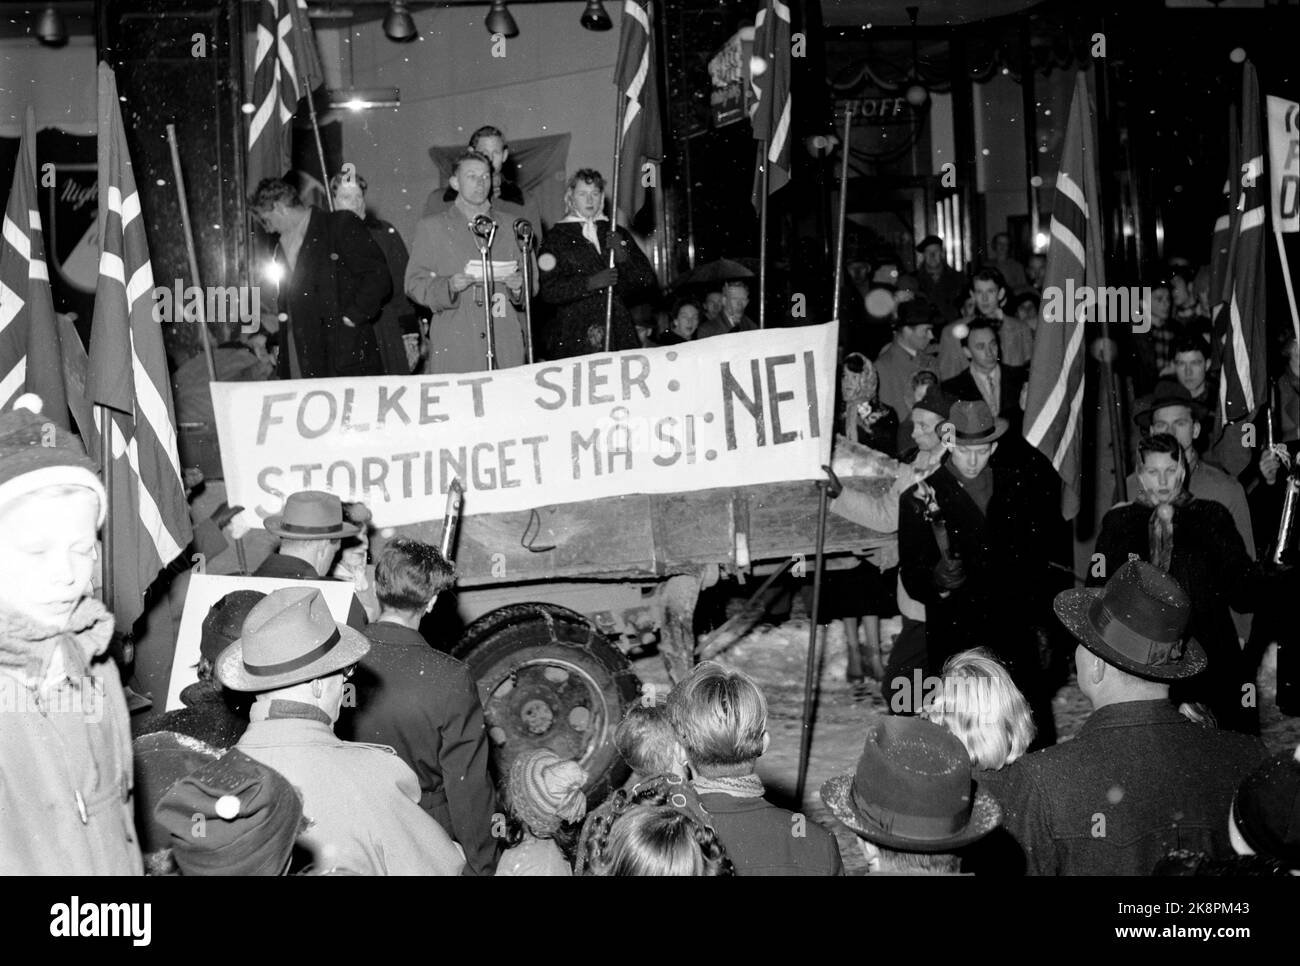 Oslo 195411122 dimostrazioni davanti a The Storting in protesta contro la Germania occidentale che vuole rinnovare e aderire alla NATO. Sul poster si dice: 'La gente dice di no, lo Storting deve dire di no'. Tuttavia, lo Storting ha approvato l'accordo di ristrutturazione tedesco e l'adesione alla NATO il 25/11 1954, con 126 voti contro 7. Foto: NTB / NTB Foto Stock